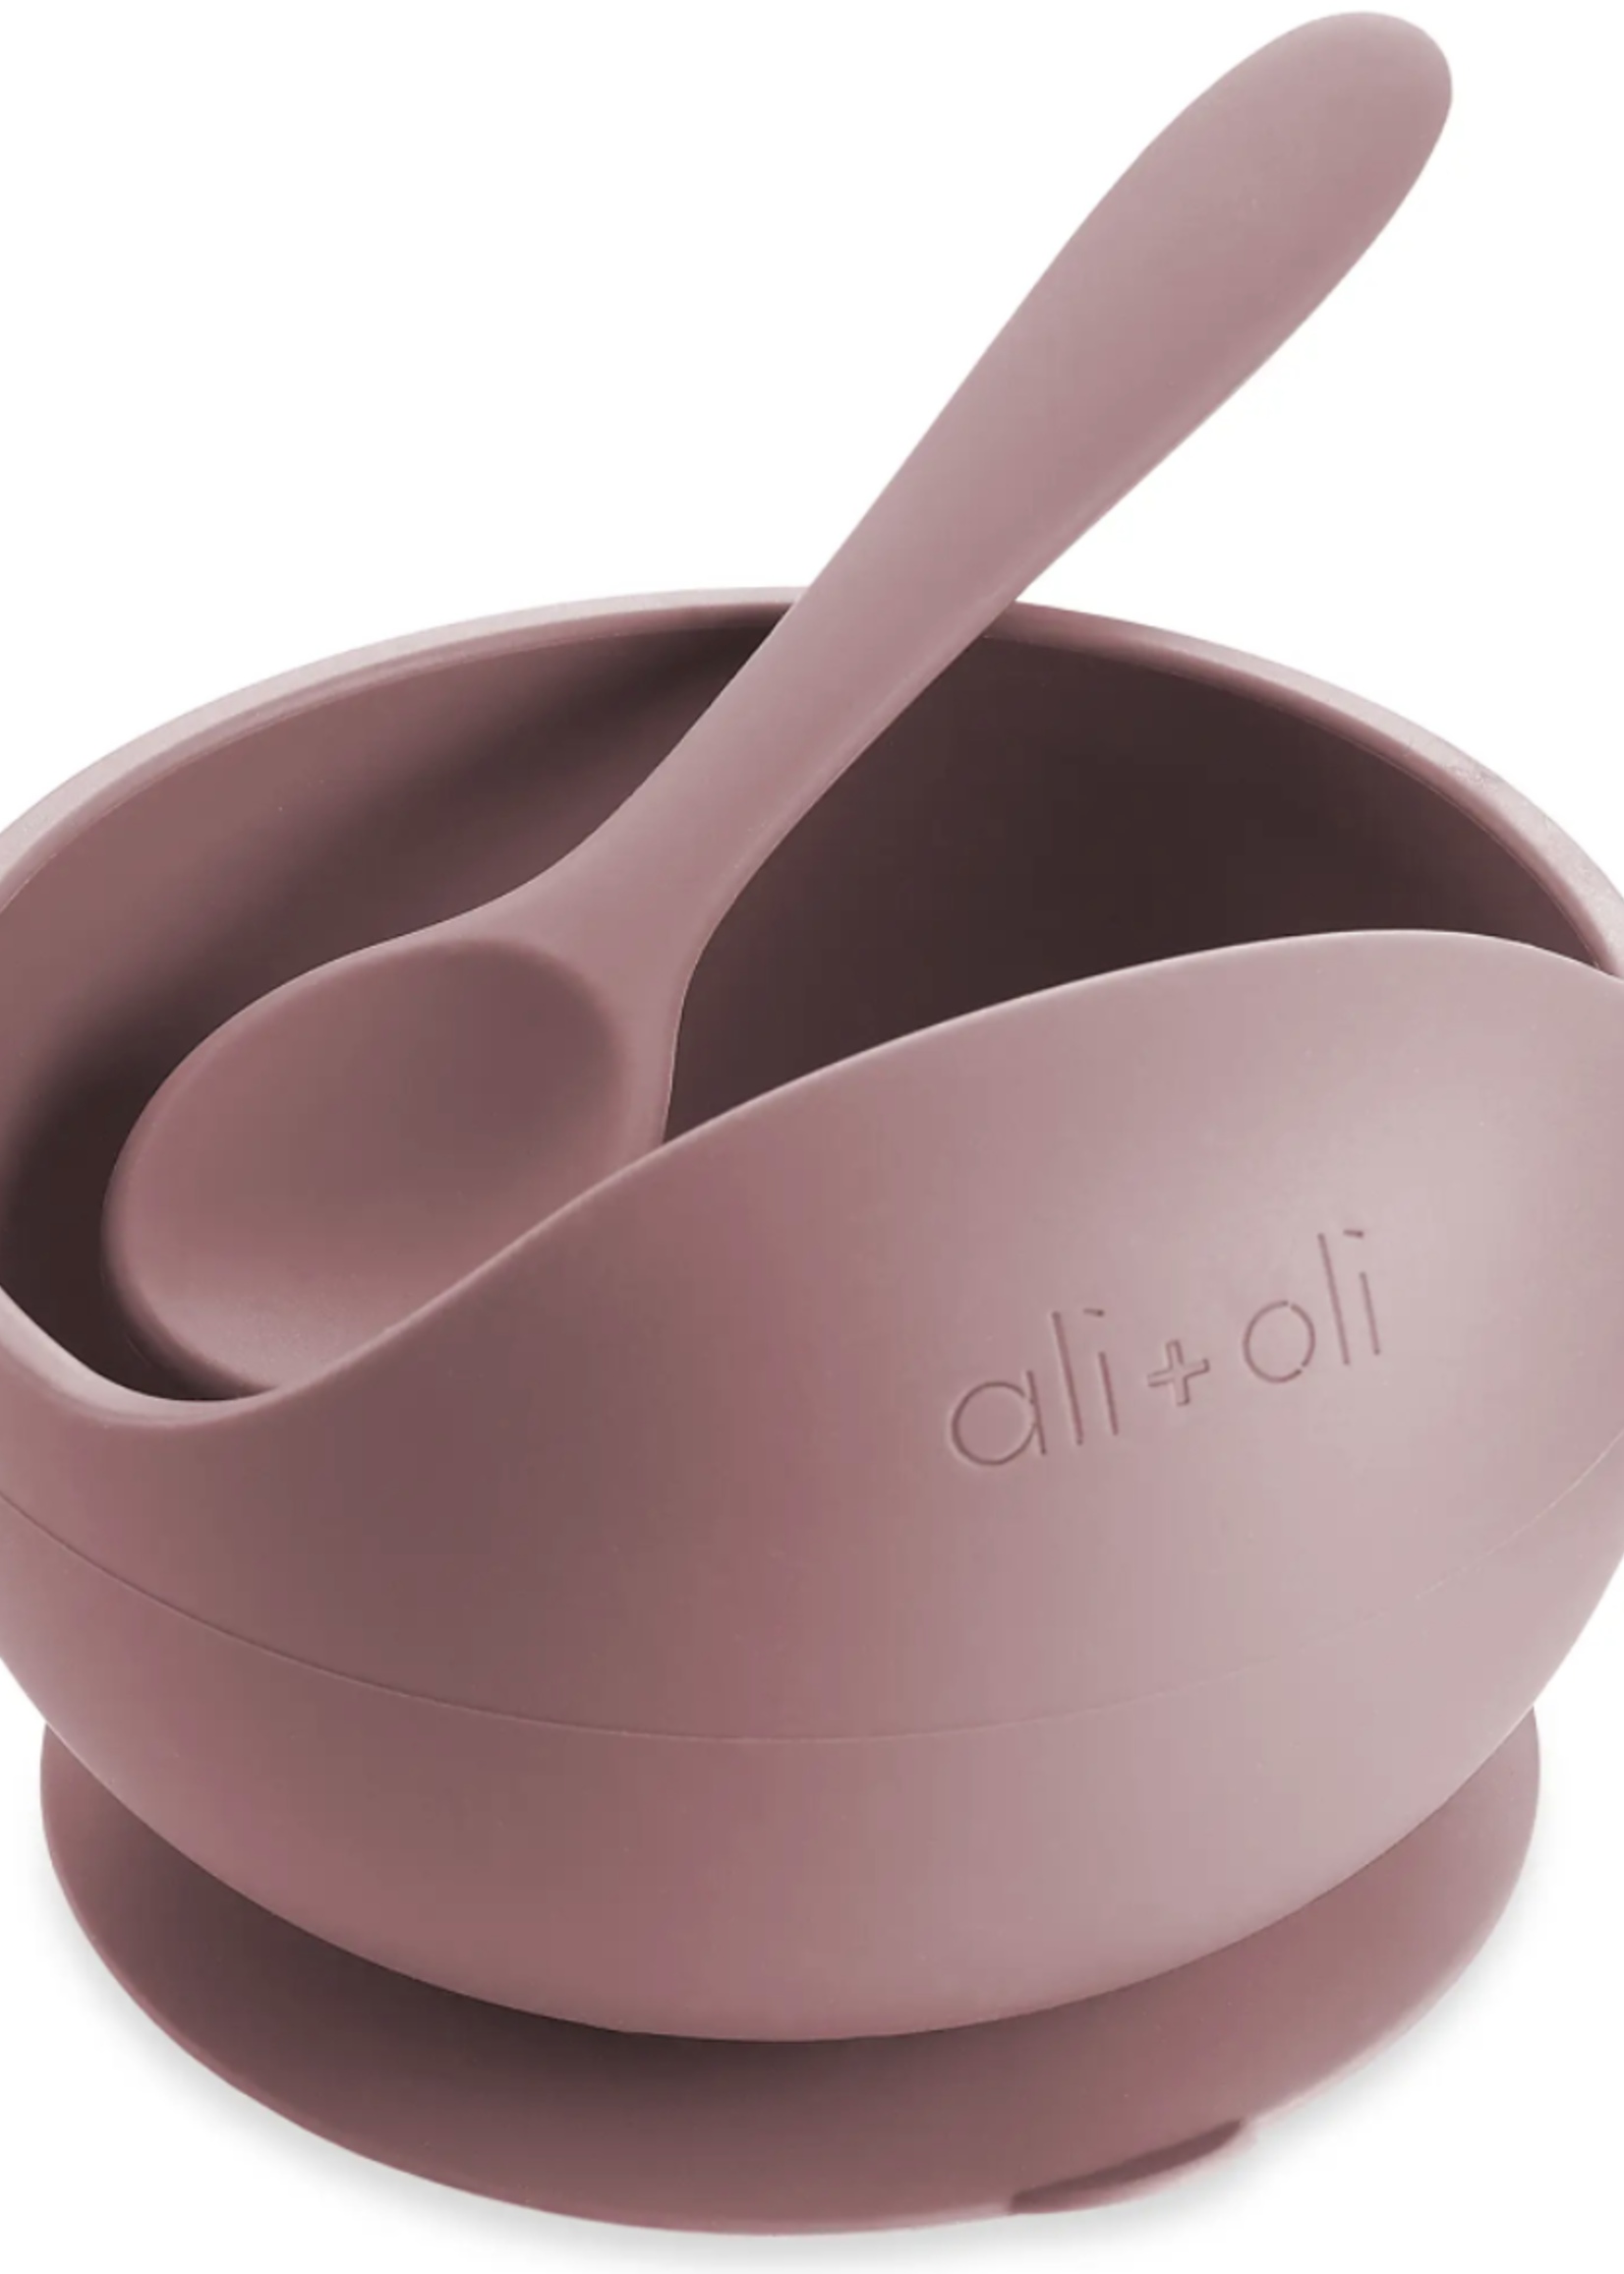 Ali + Oli Ali + Oli Silicone Suction Bowl & Spoon Set (mauve)